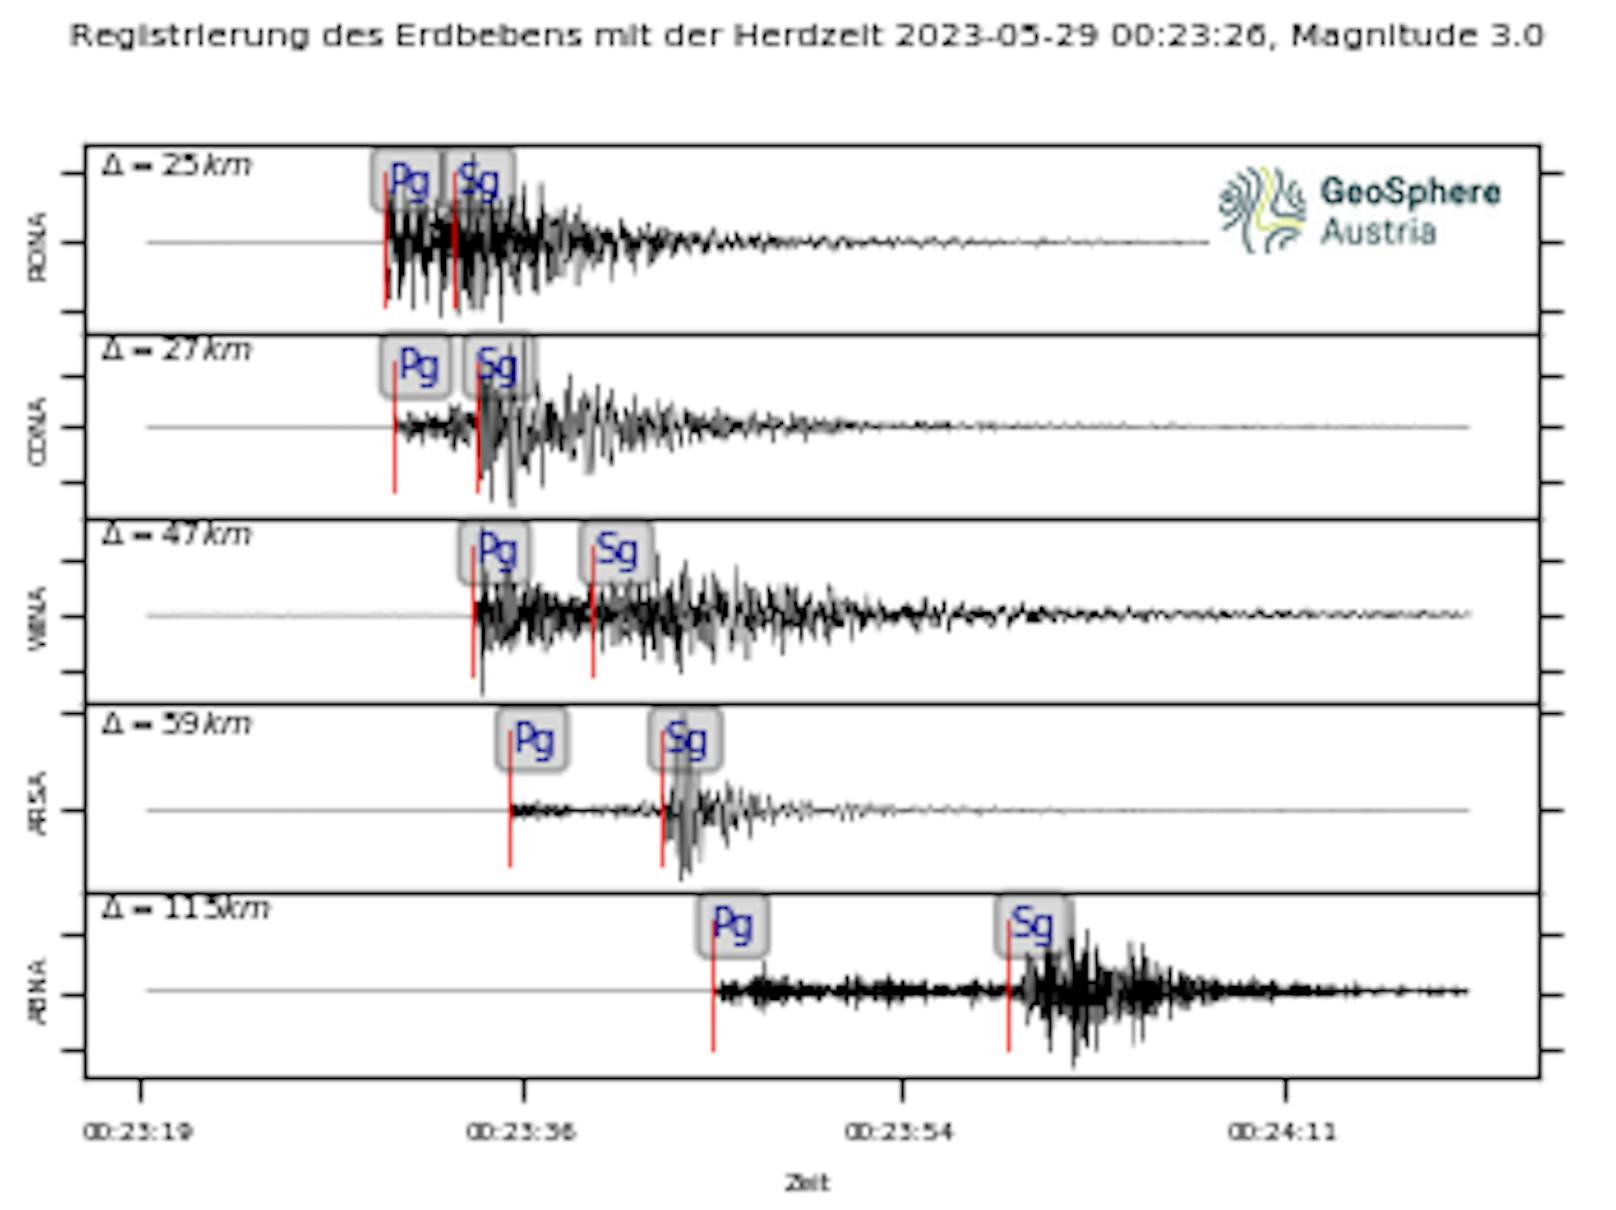 Am Montag, den 29. Mai 2023, ereignete sich nachts um 02:23 Uhr in Niederösterreich im Raum Gloggnitz ein Erdbeben der Magnitude 3.